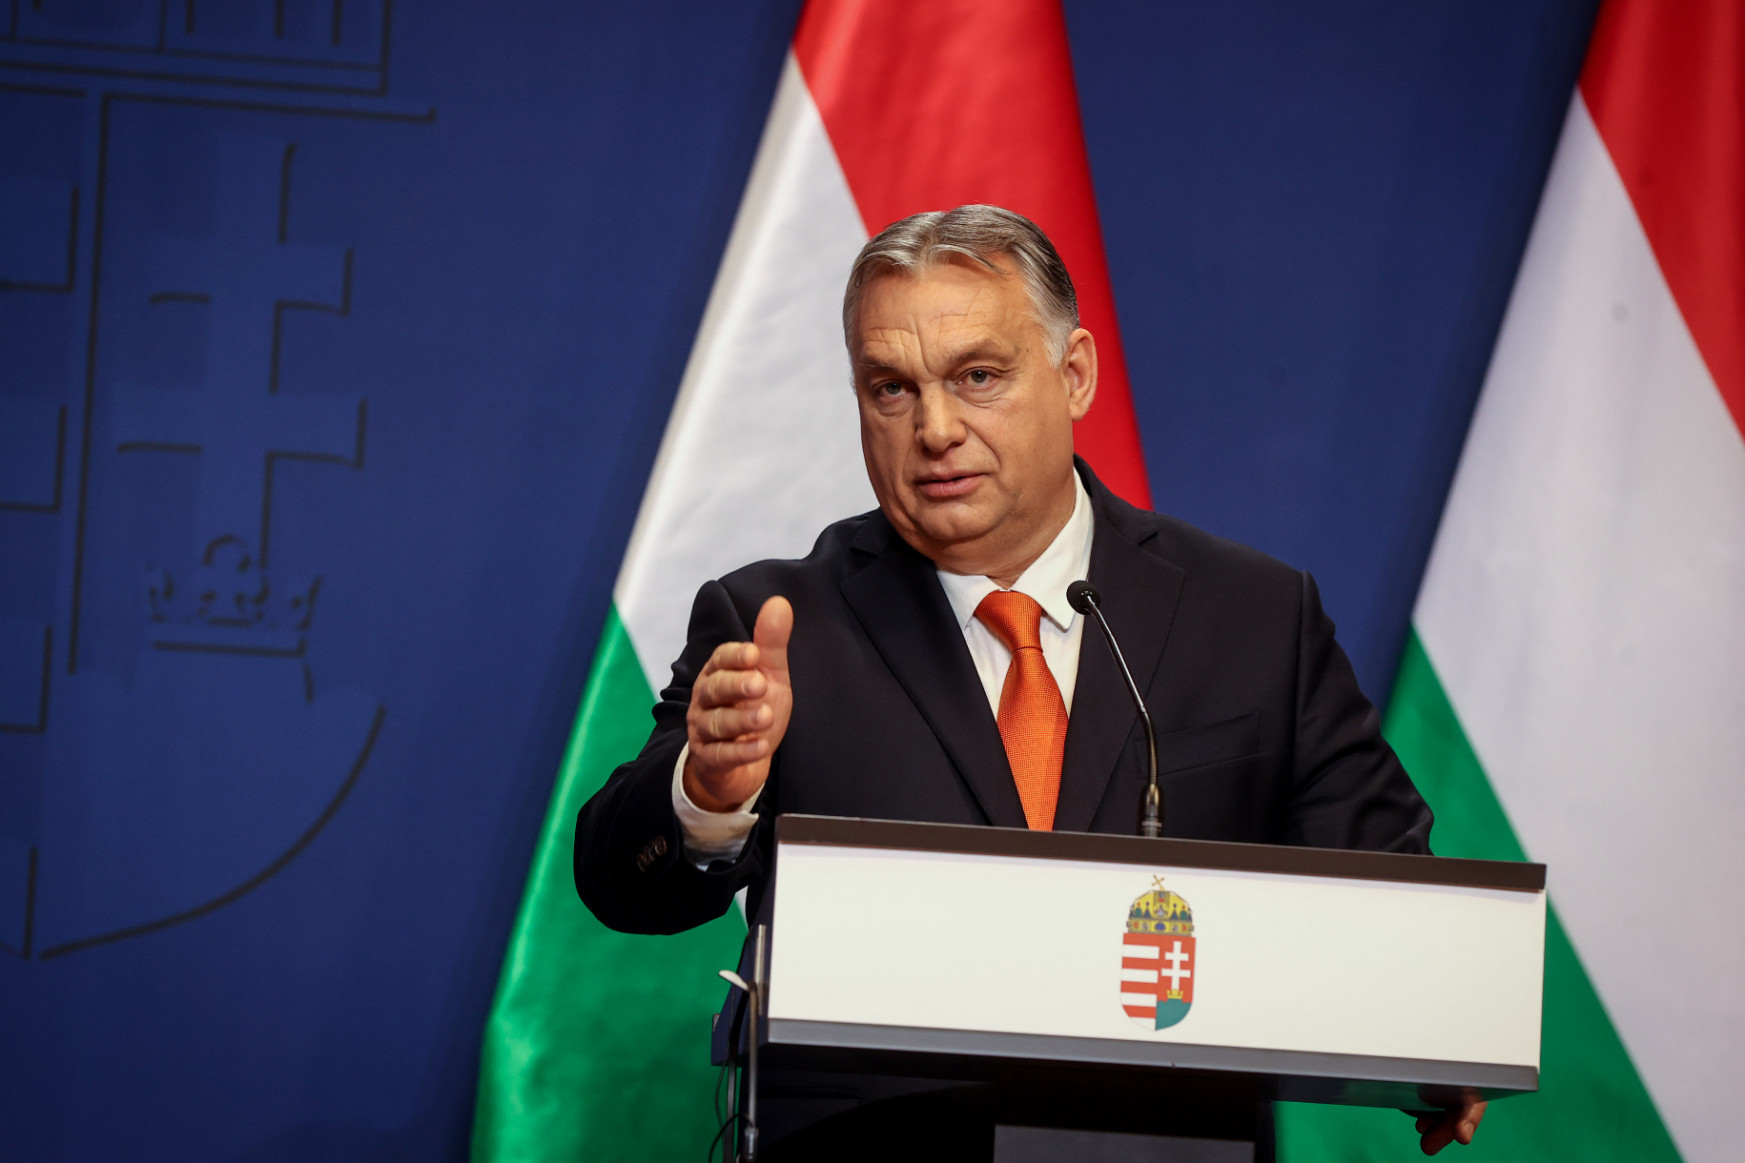 A magyar kormány szuverenitási kérdést csinál a jogsértésből, nem akarják betartani az Európai Bíróság ítéletét